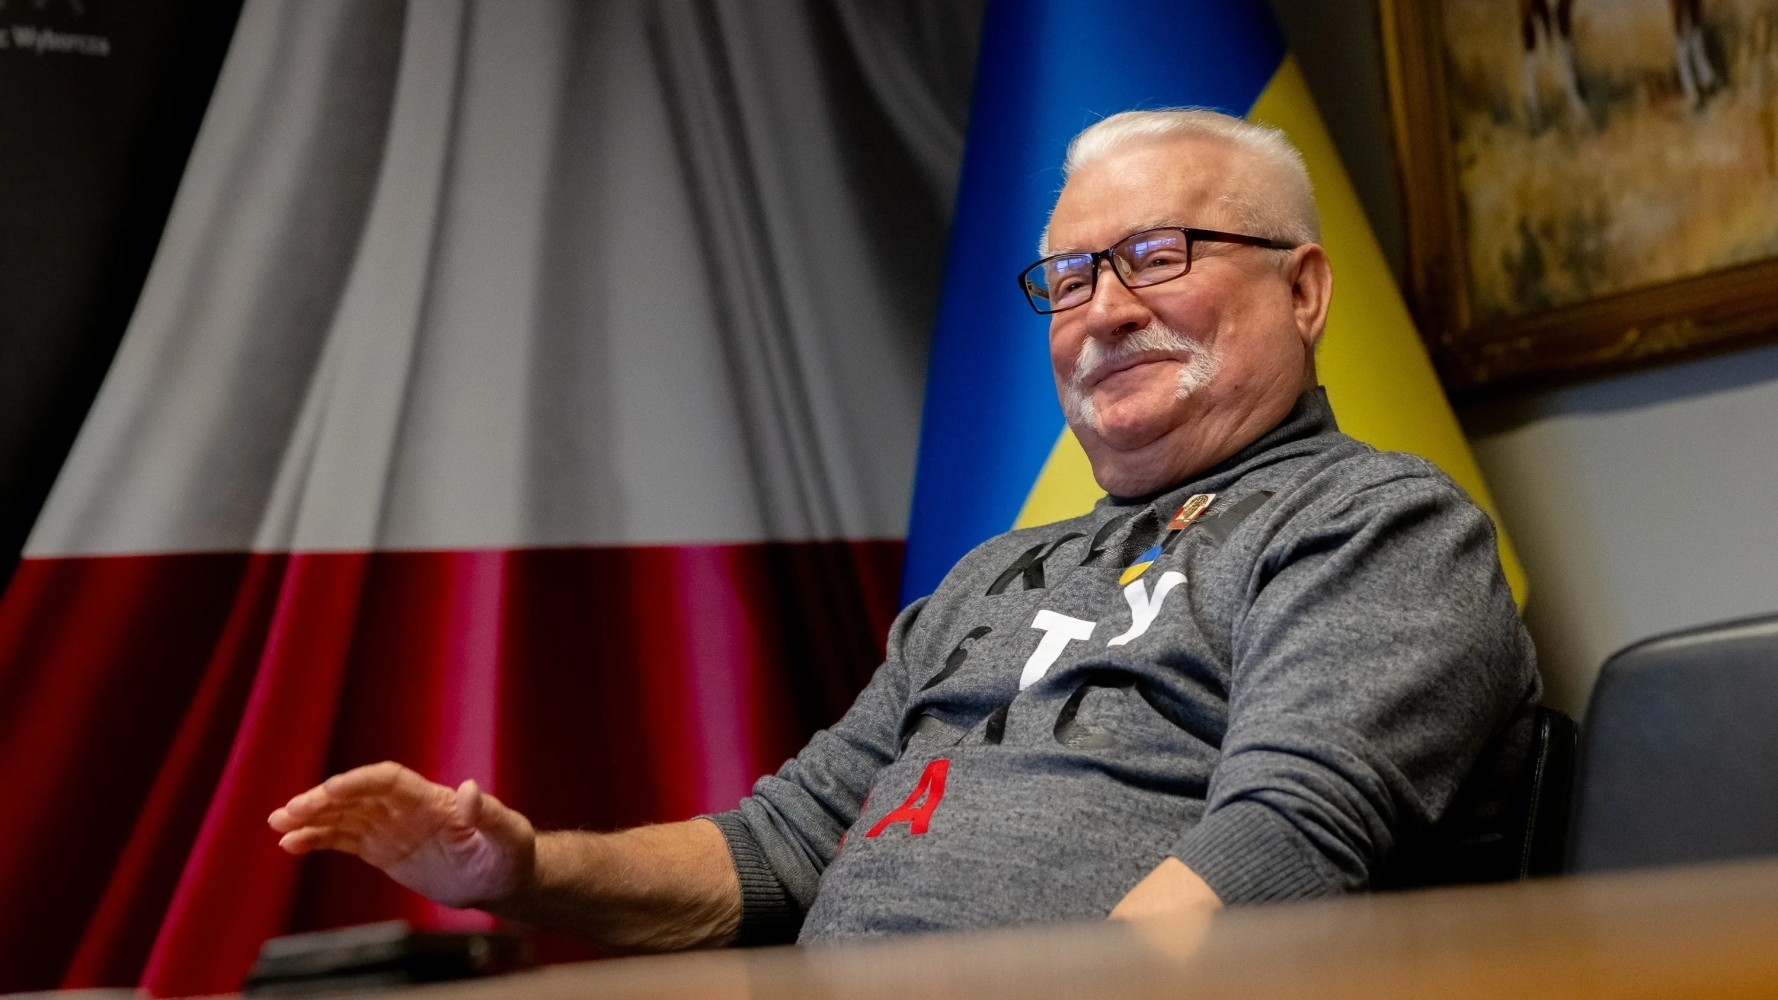 Лех Валенса закликає світ захищати Україну від російської агресії та вимагає реформ у Росії